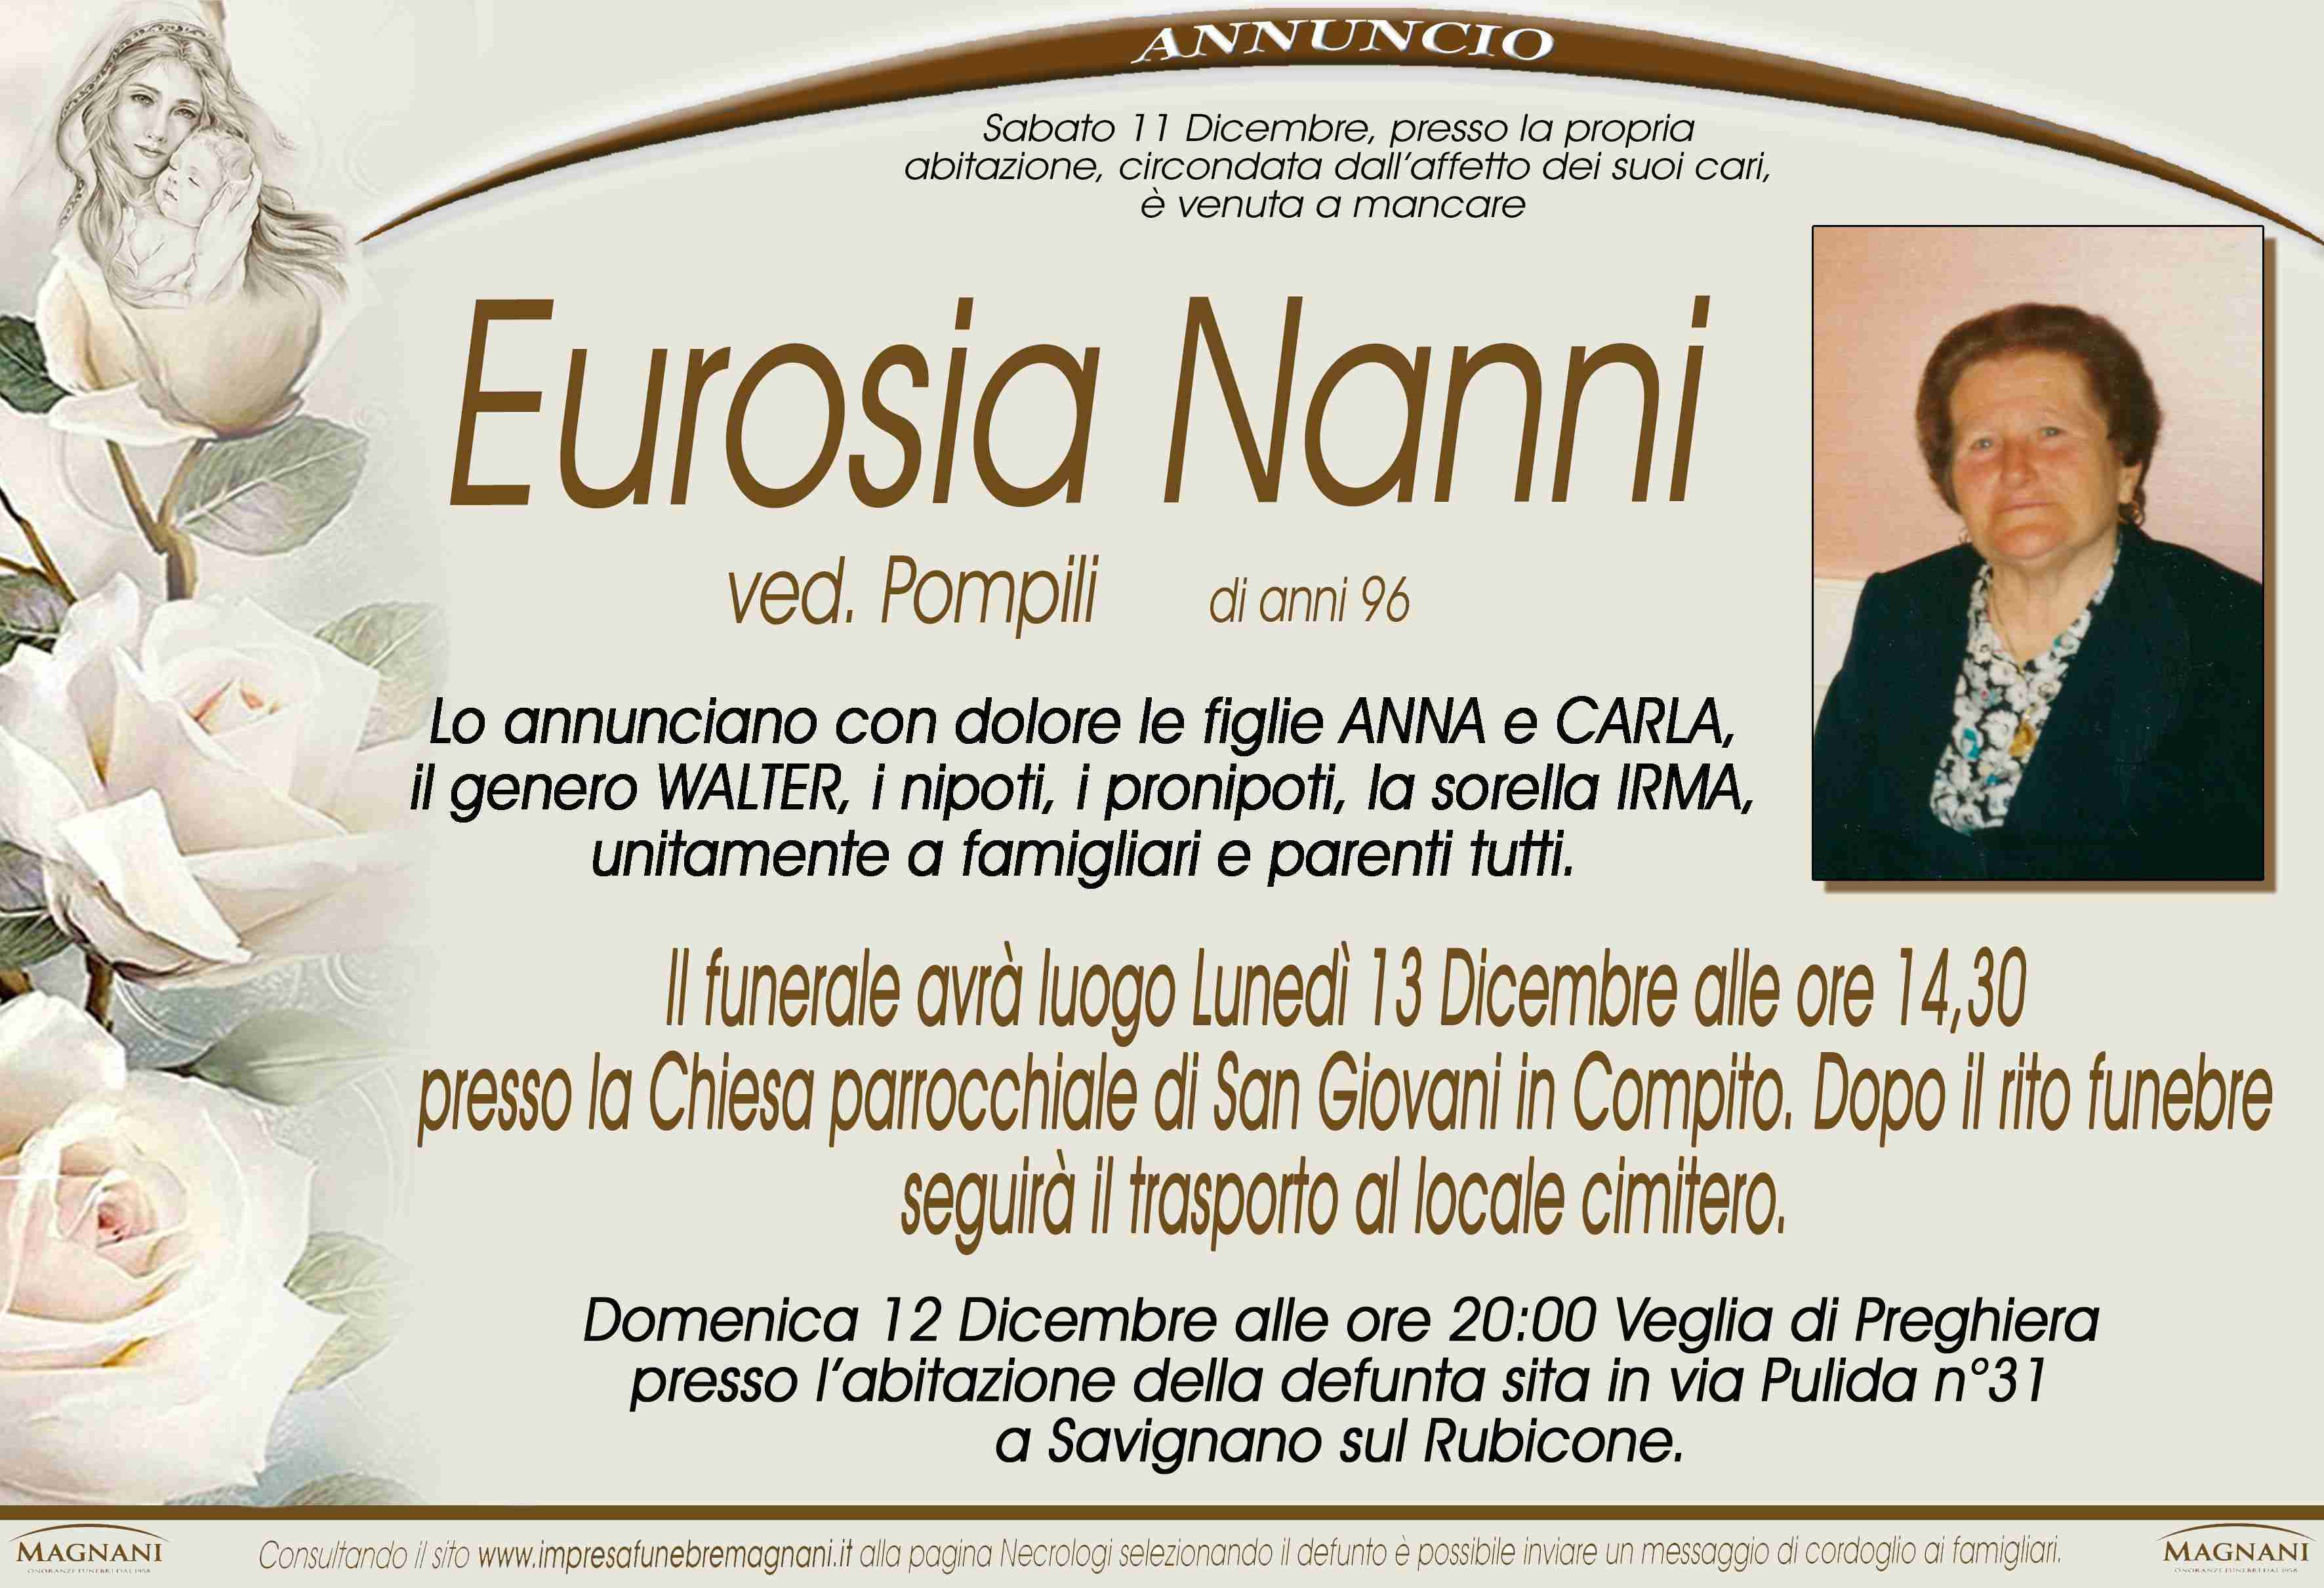 Eurosia Nanni